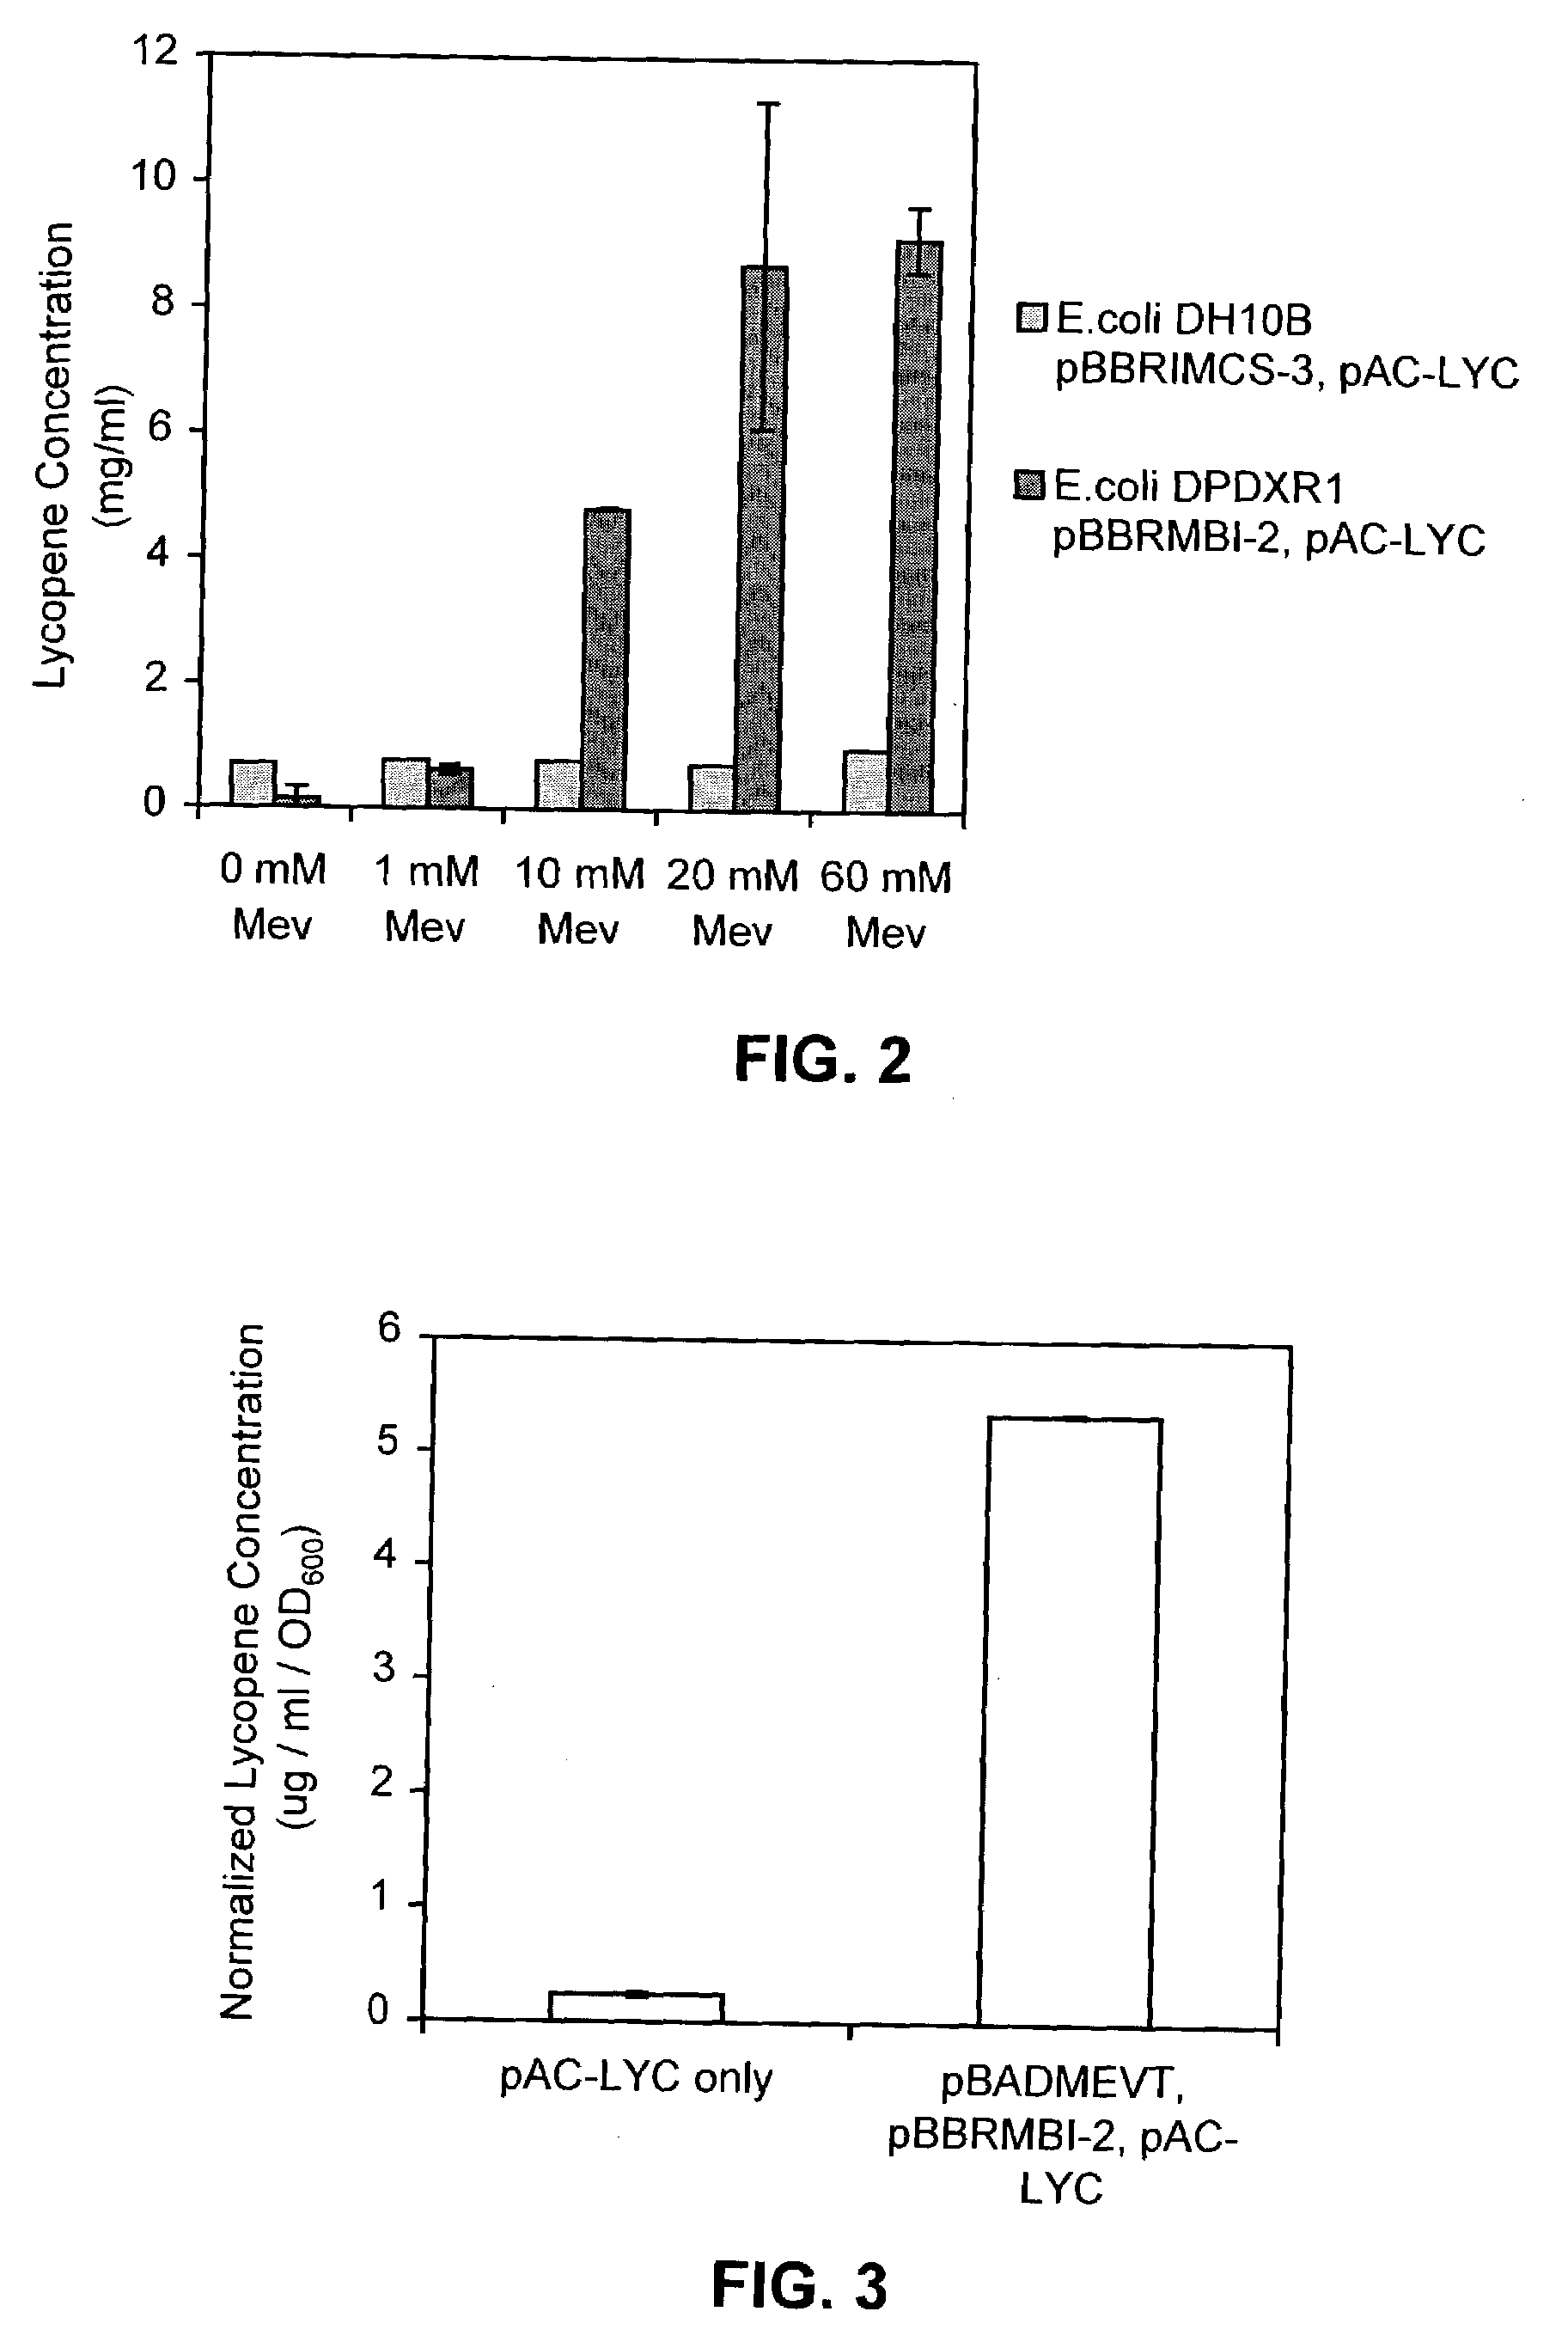 Biosynthesis of amorpha-4,11-diene